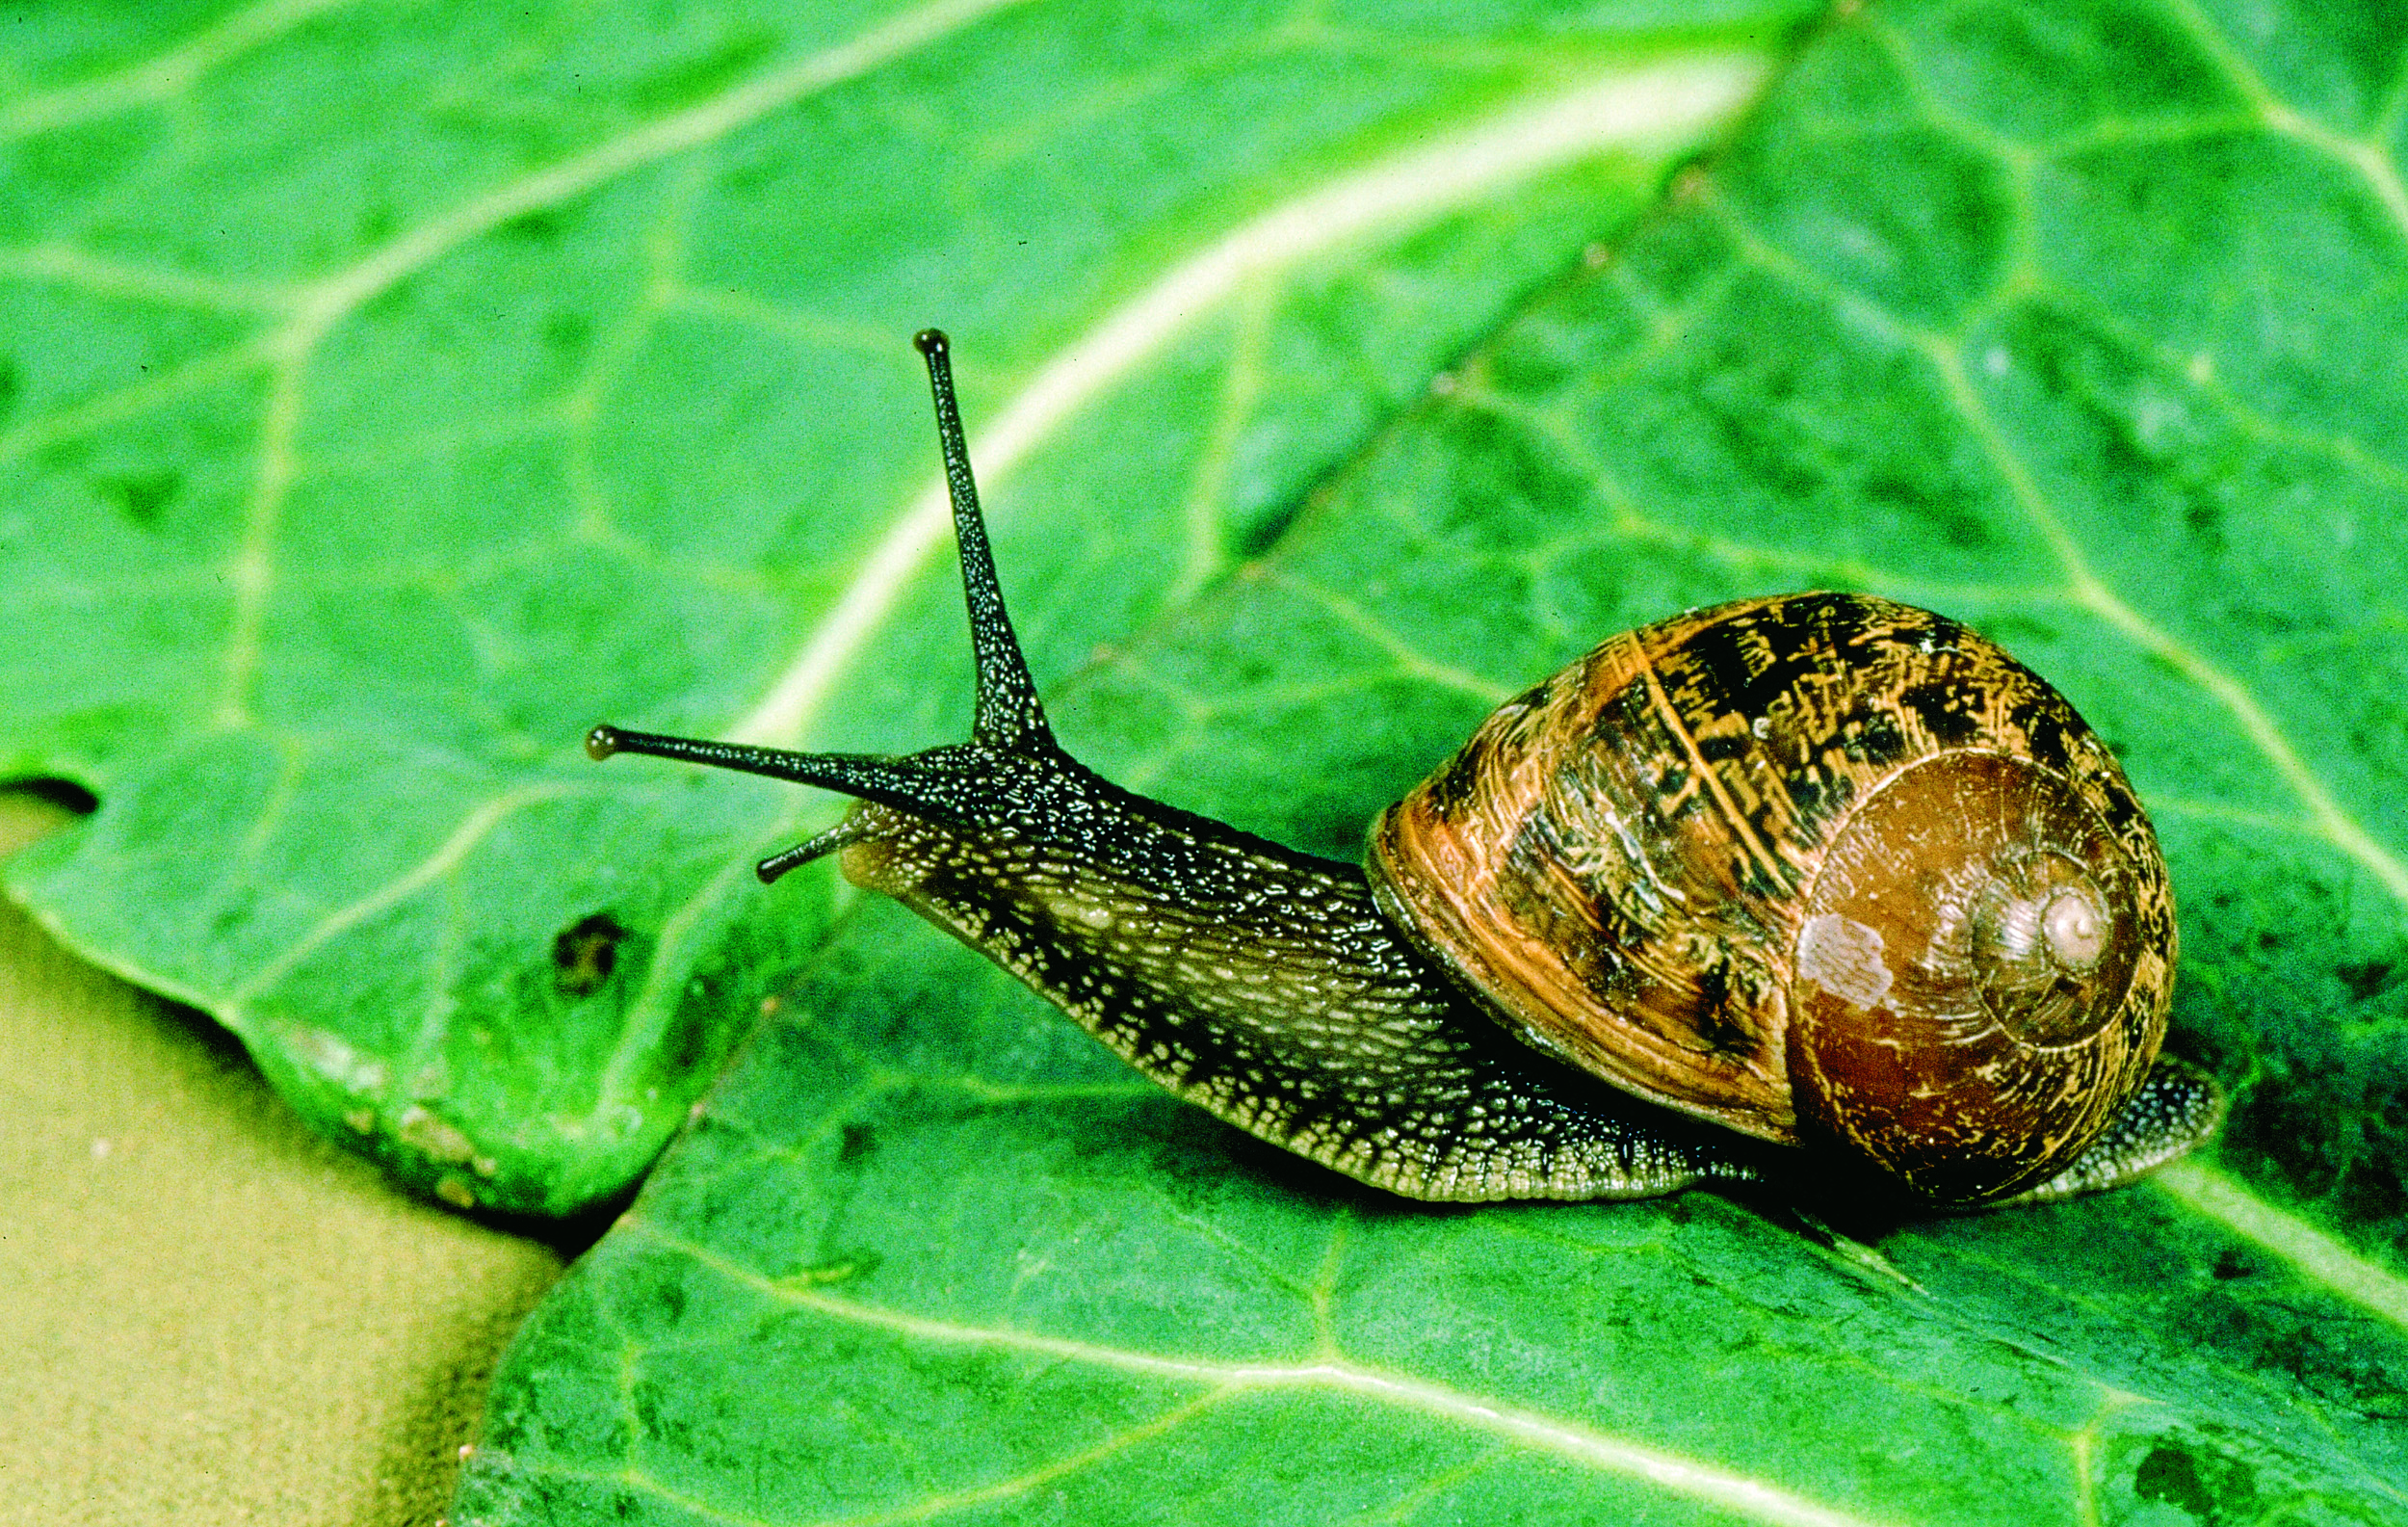 Snails photo